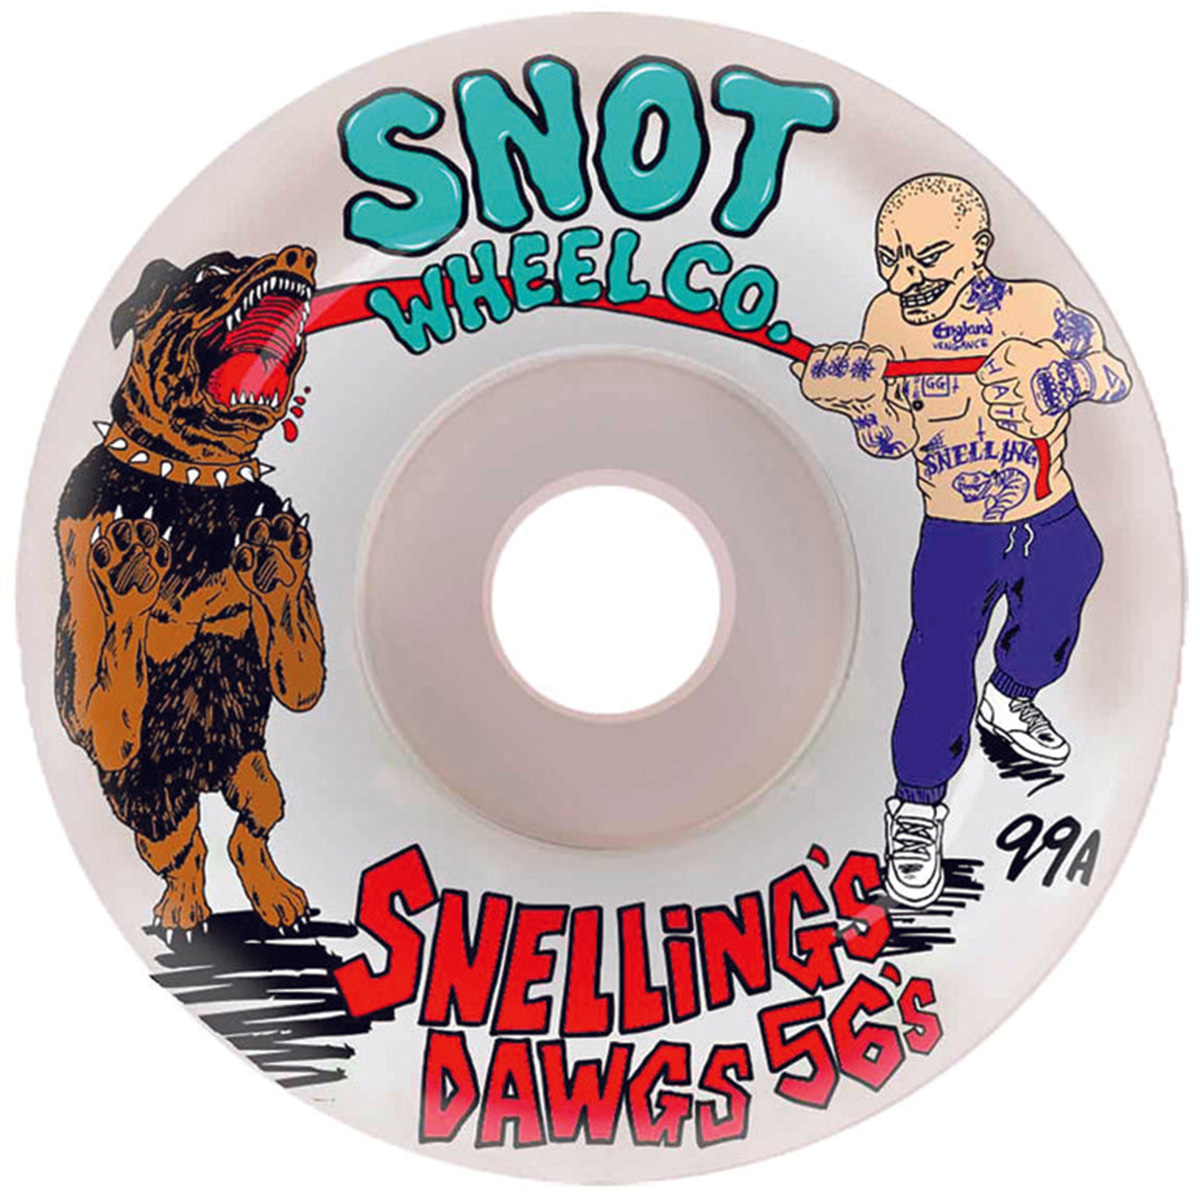 Snot Wheel Co Snellings Dawgs Wheels 56mm